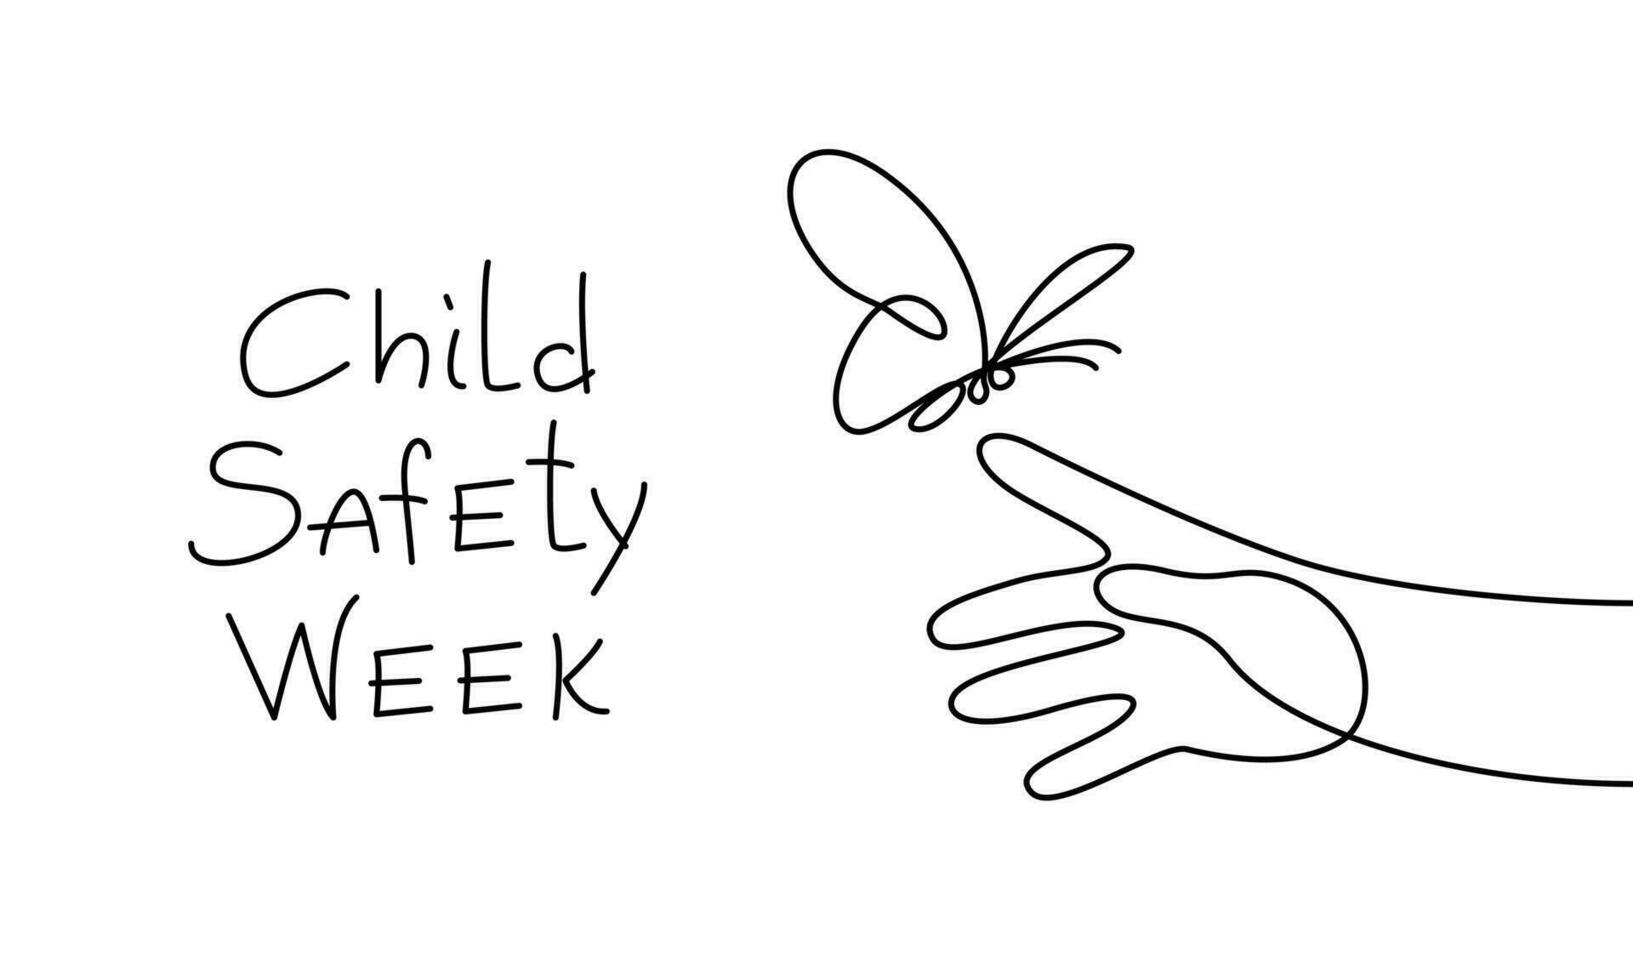 kontinuerlig linje, översikt. barn säkerhet vecka. barns hand med en fjäril. baner med text. vektor illustration